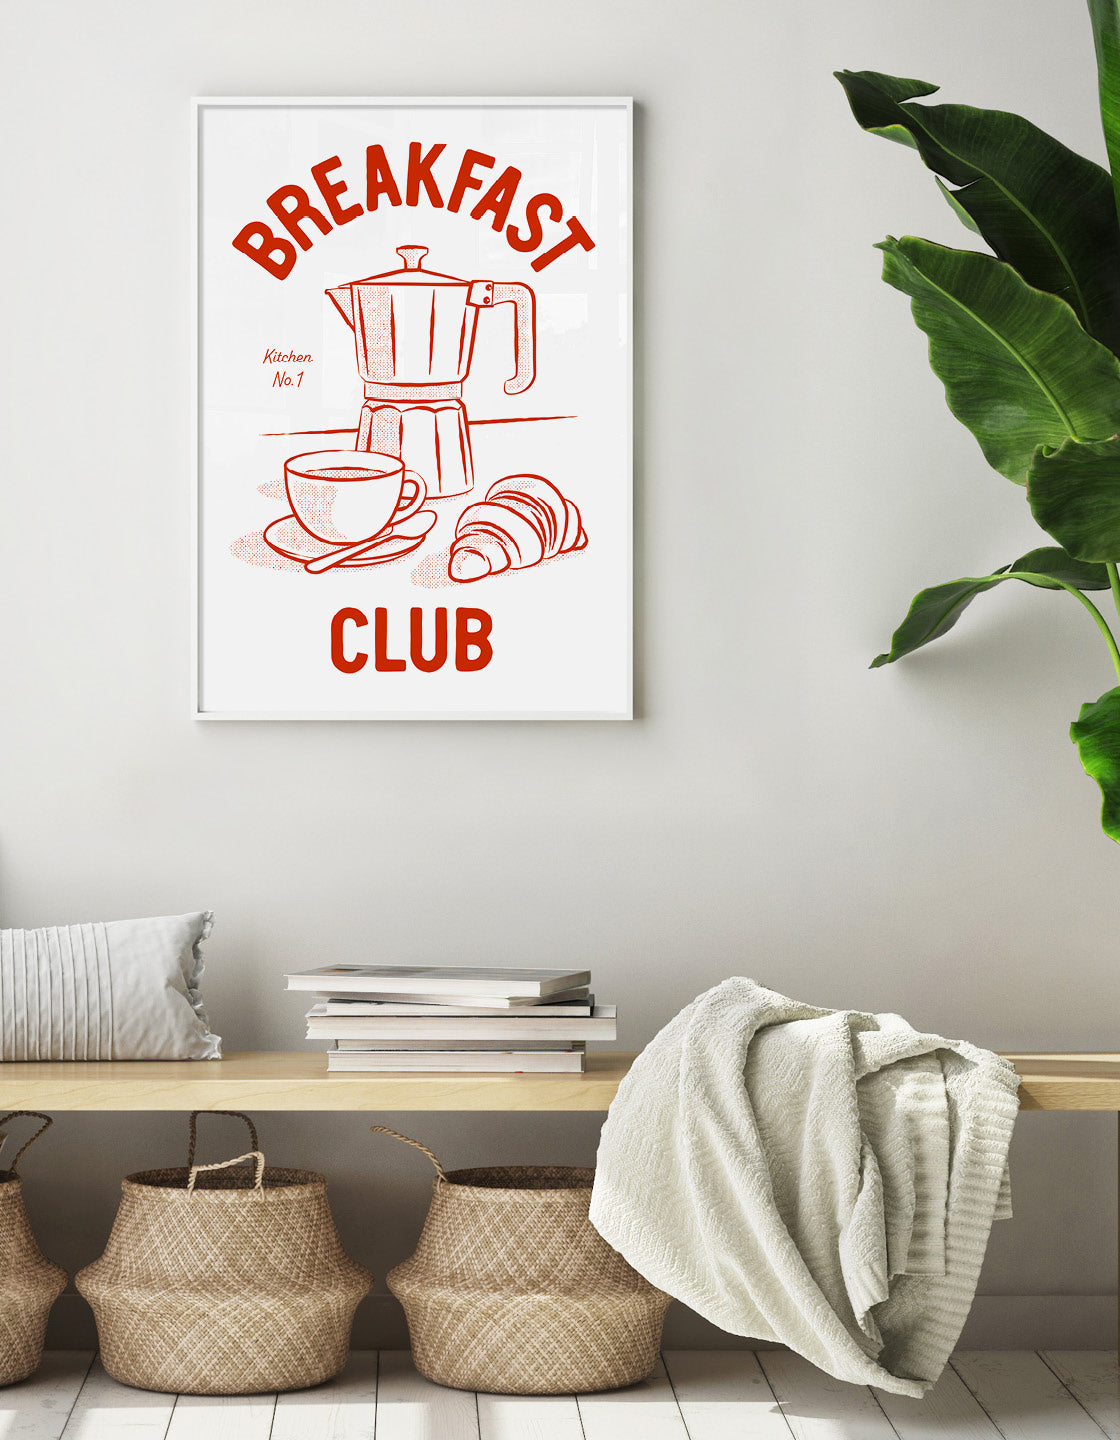 Breakfast club